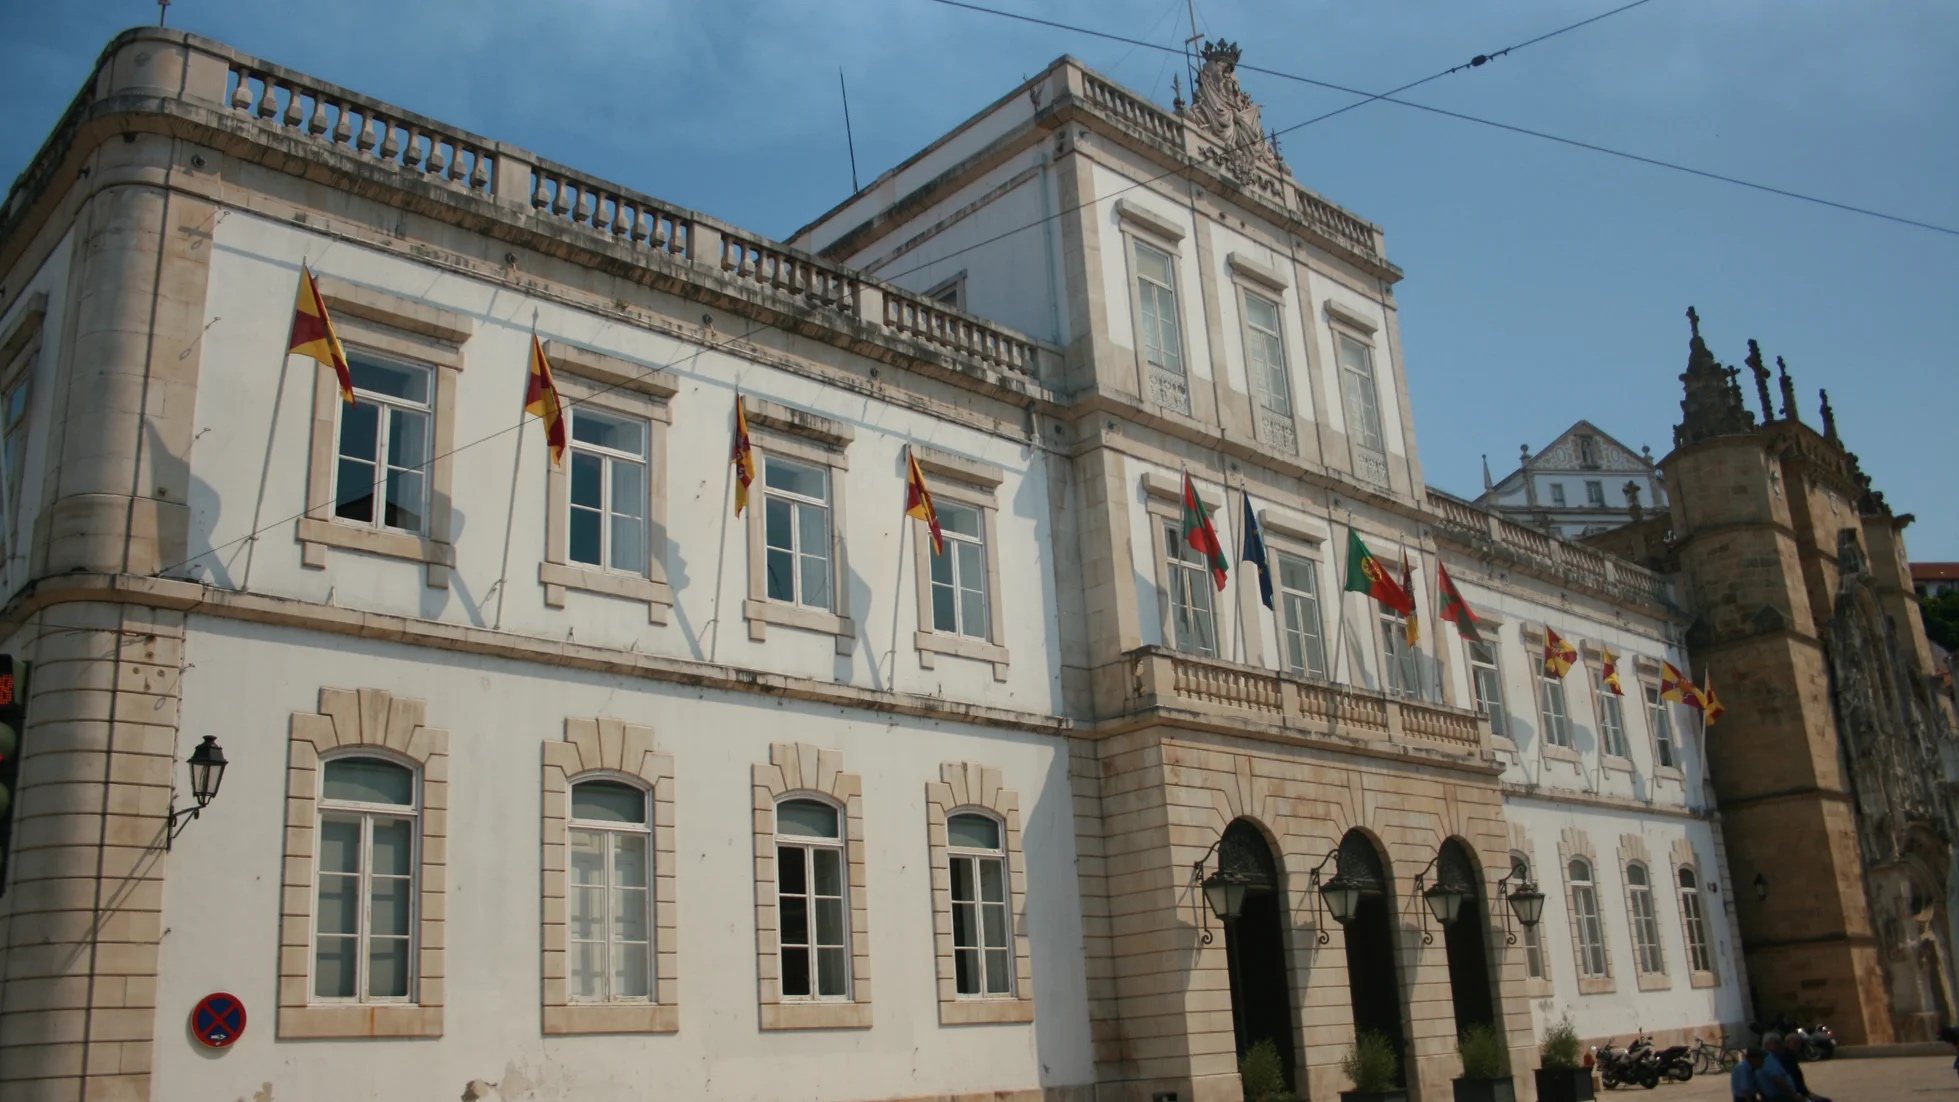 O presidente da Câmara de Coimbra afirmou que não se deveria fazer &quot;juízos de valor ou censura sobre associações&quot;